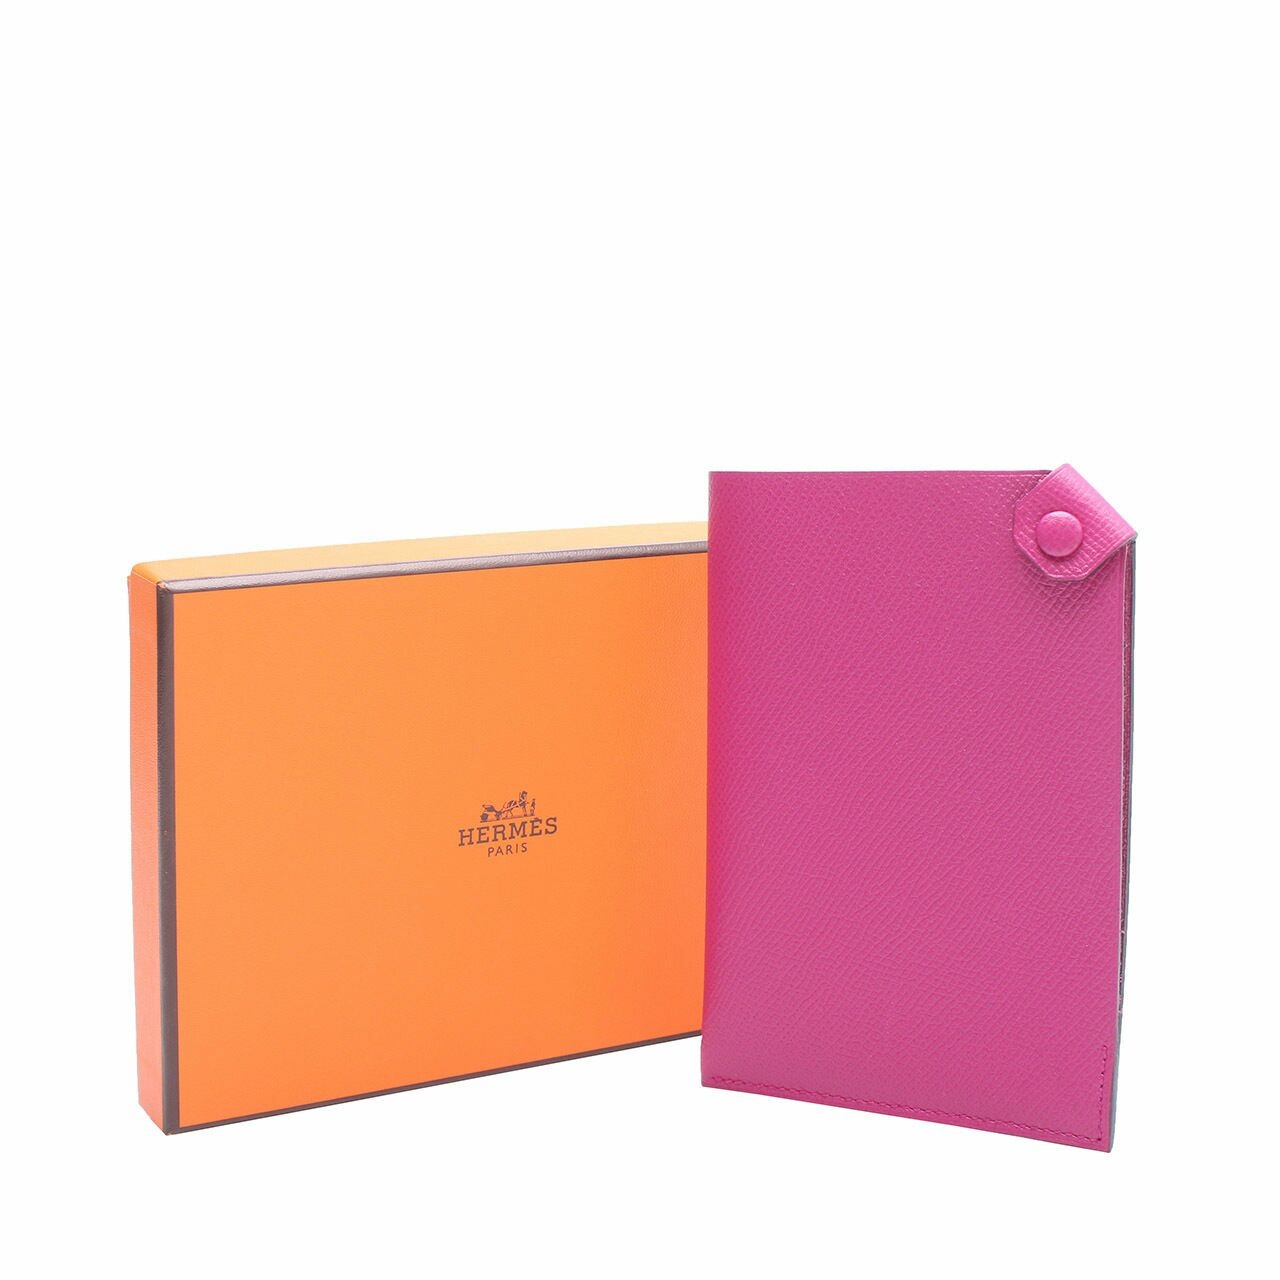 Hermes Pink Leather Card Holder